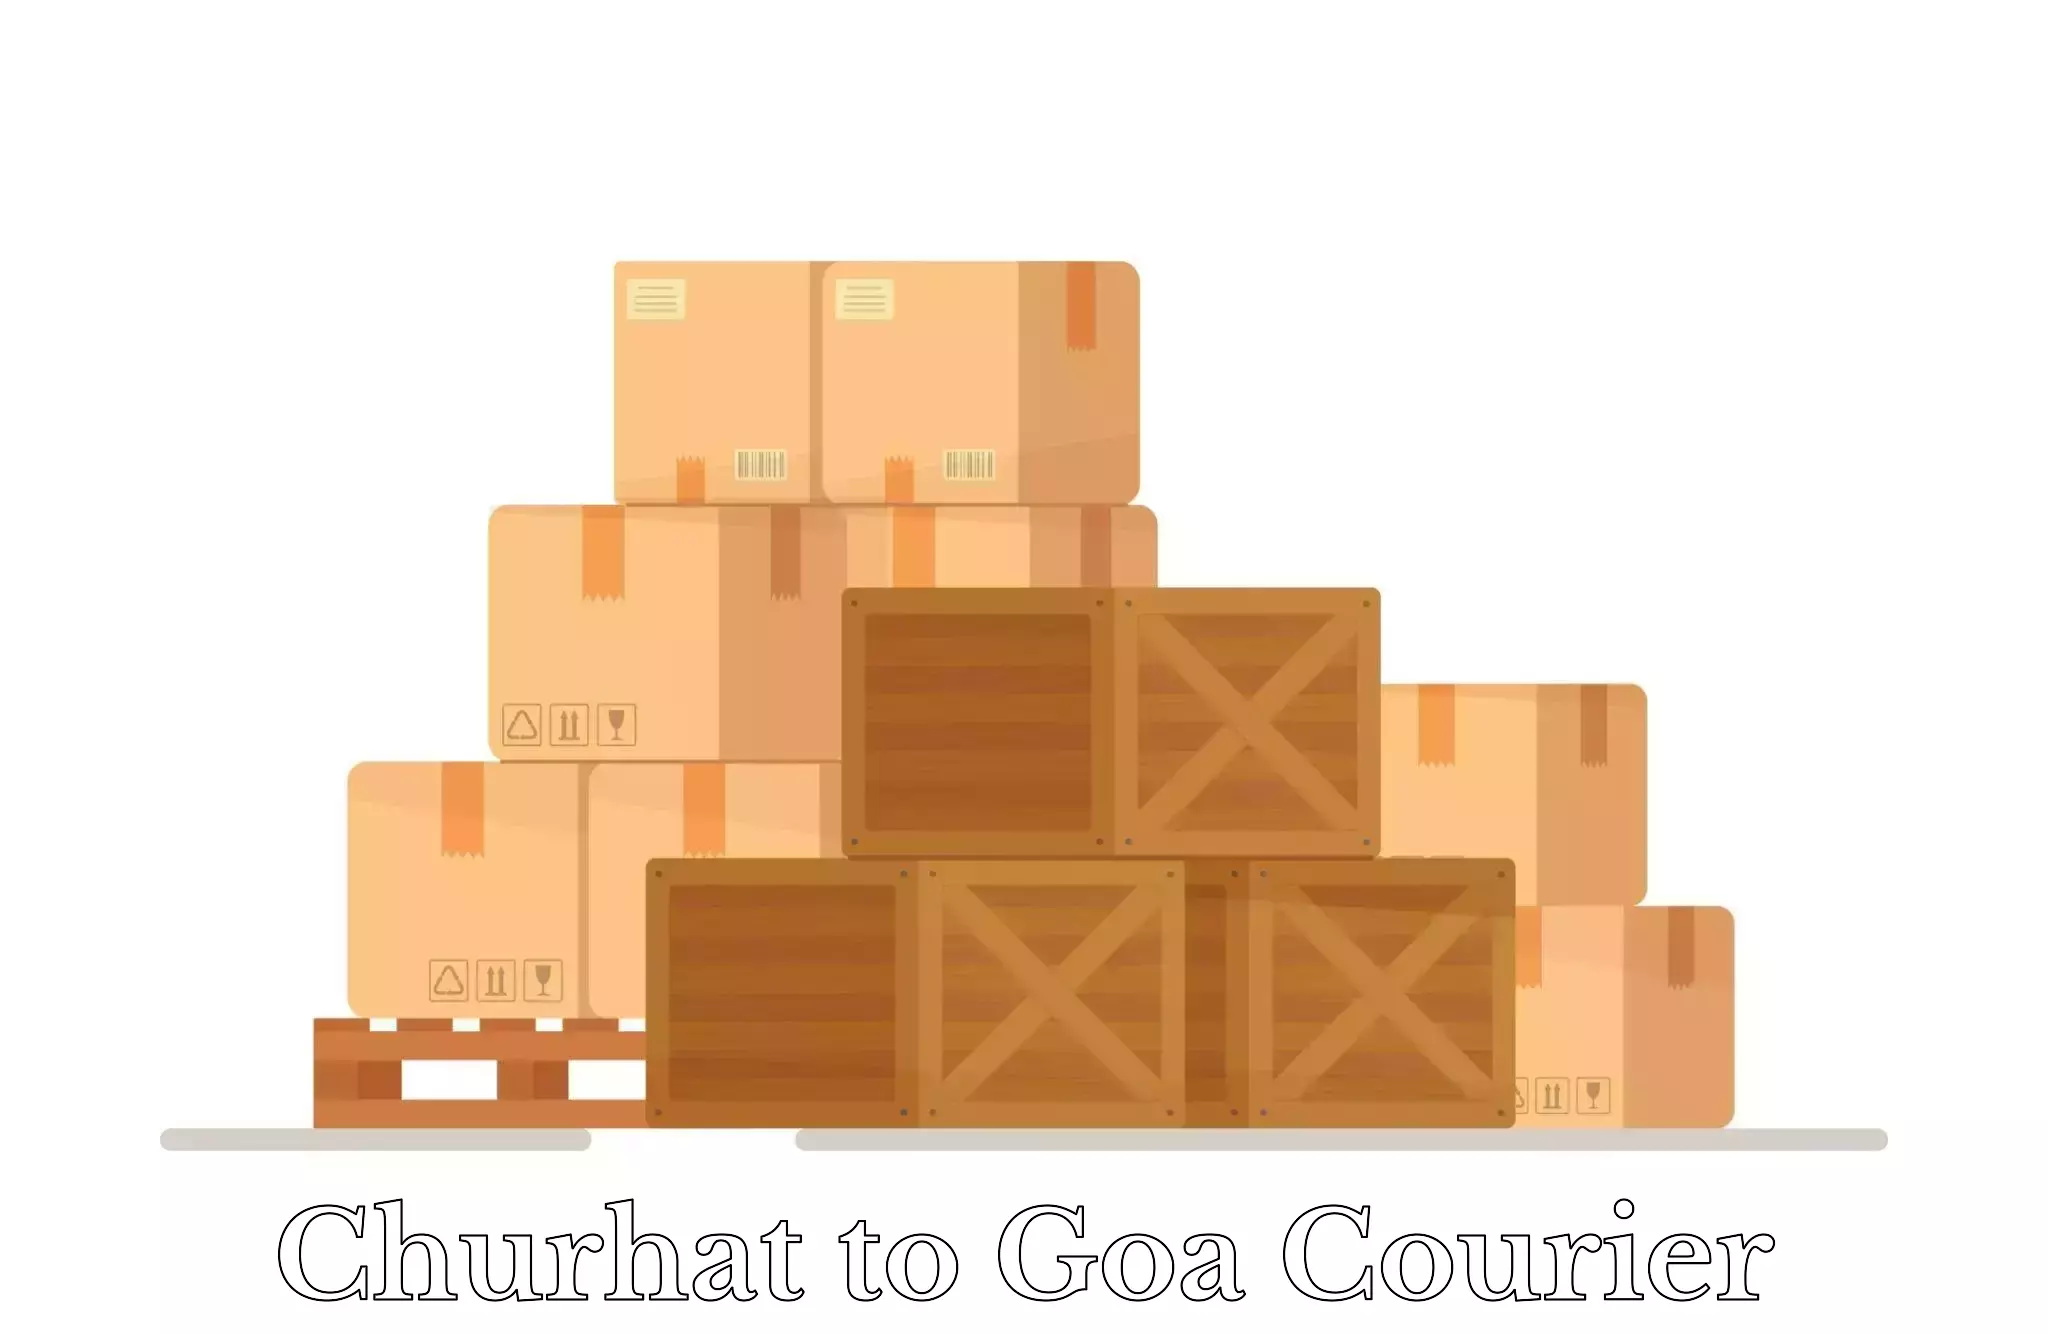 Luggage shipment tracking Churhat to Goa University